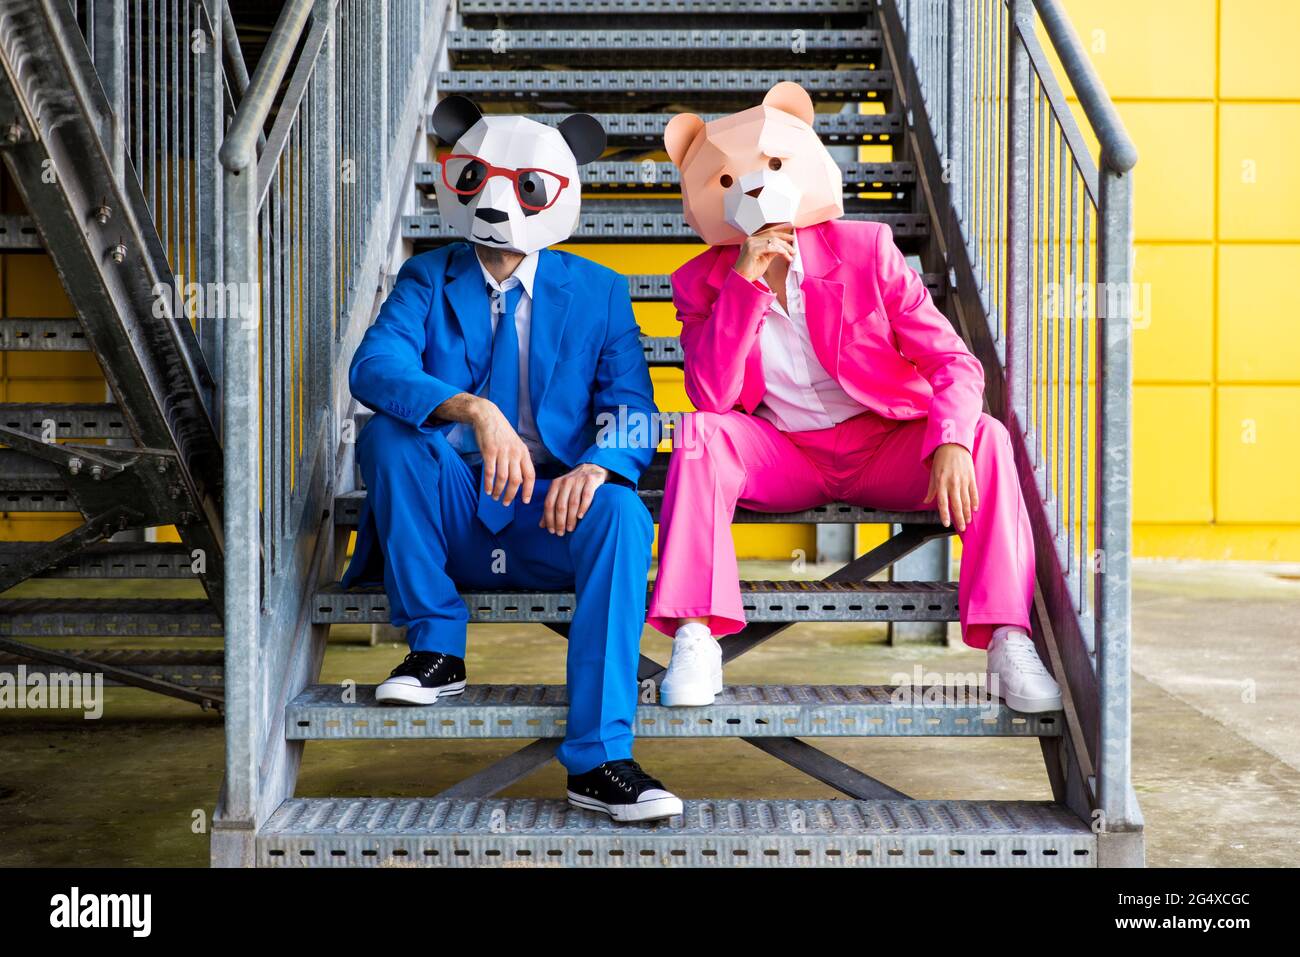 Homme et femme portant des costumes vibrants et des masques d'ours assis ensemble sur des escaliers métalliques Banque D'Images